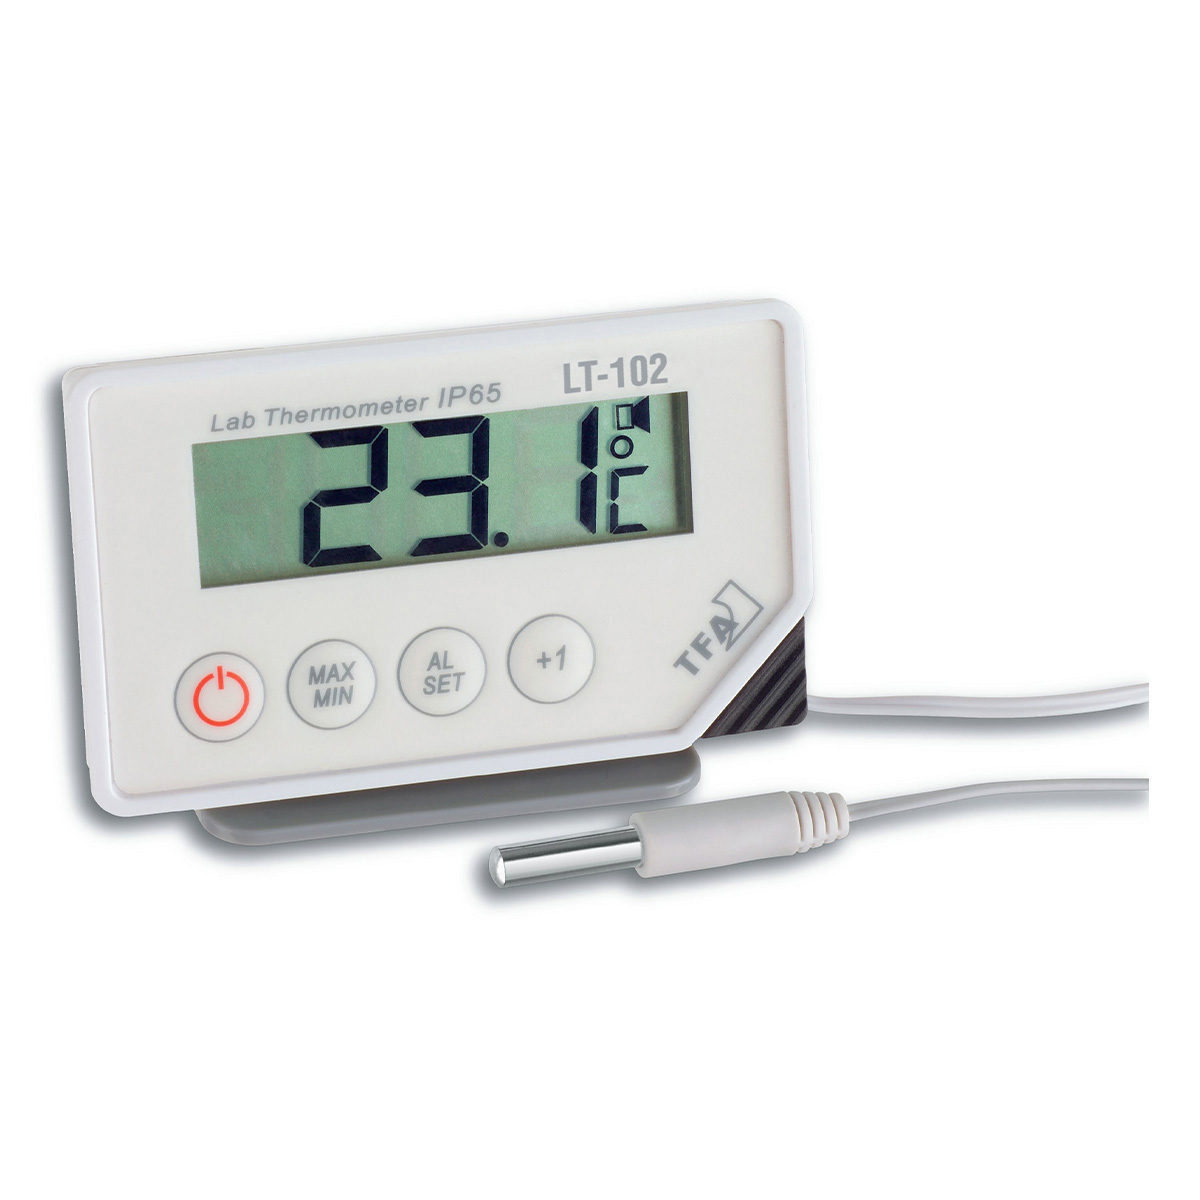 TFA Dostmann Innen Außen Thermometer Temperatur Messer Digital LCD